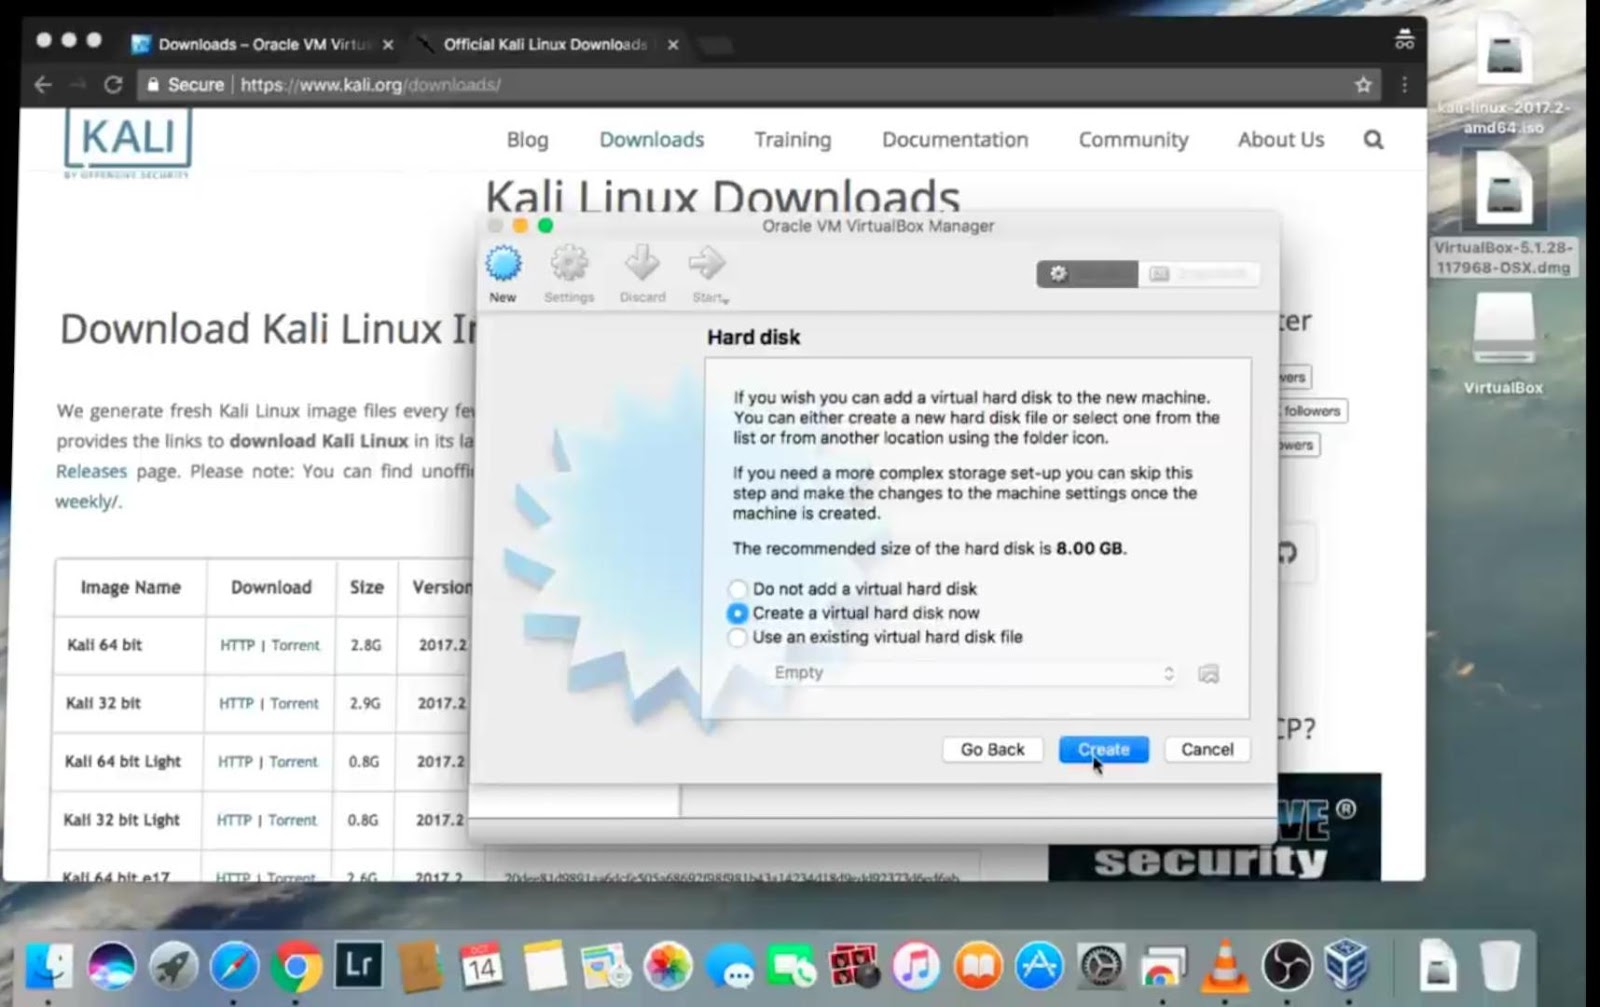 AlVgq06FFgMs8lGH1s9kBLDb8FT1MIeCdjmfrMY9RDWMpxlyW4bZiM yNrwK EukK0TH9sqZteSh6a9mt bN16nny9tgvhsJ - How to install Kali Linux on Mac